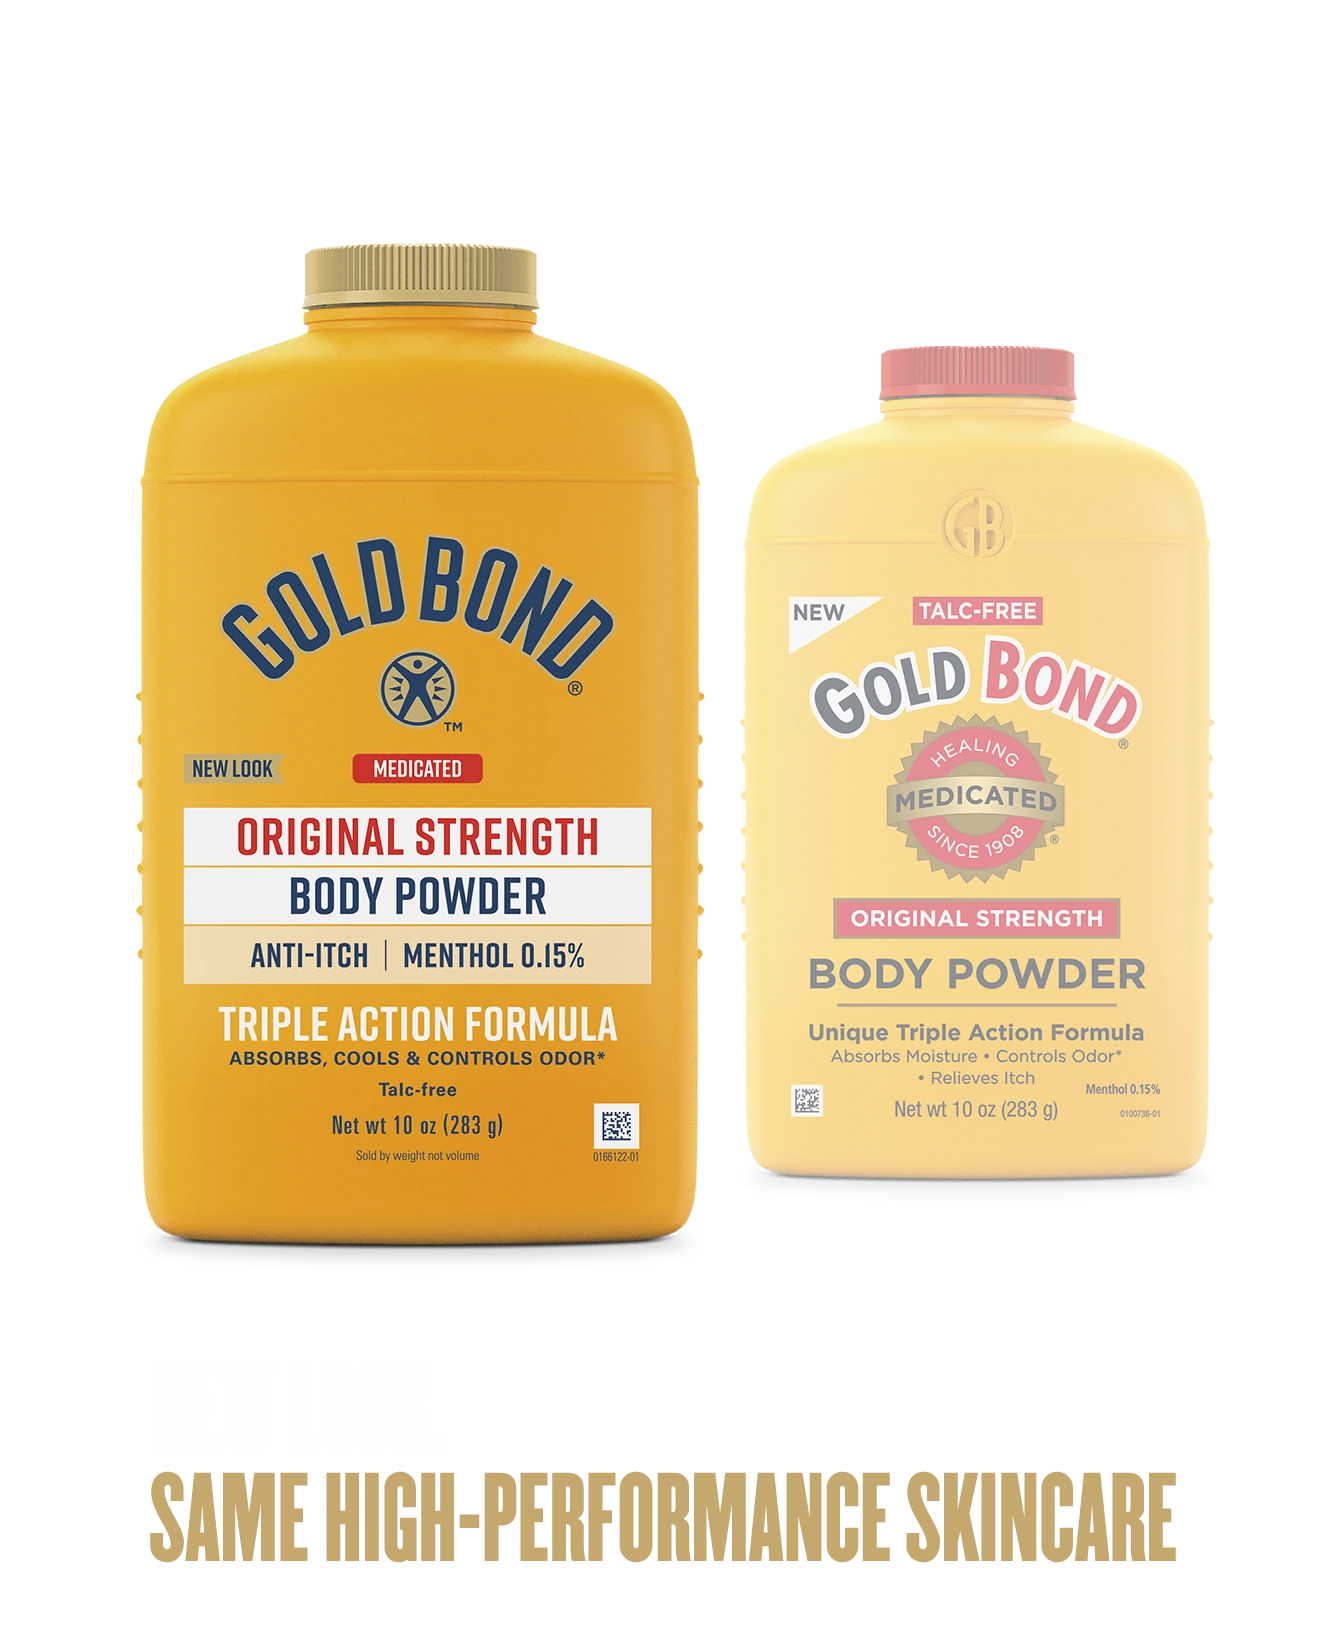 Original Strength Medicated Body Powder